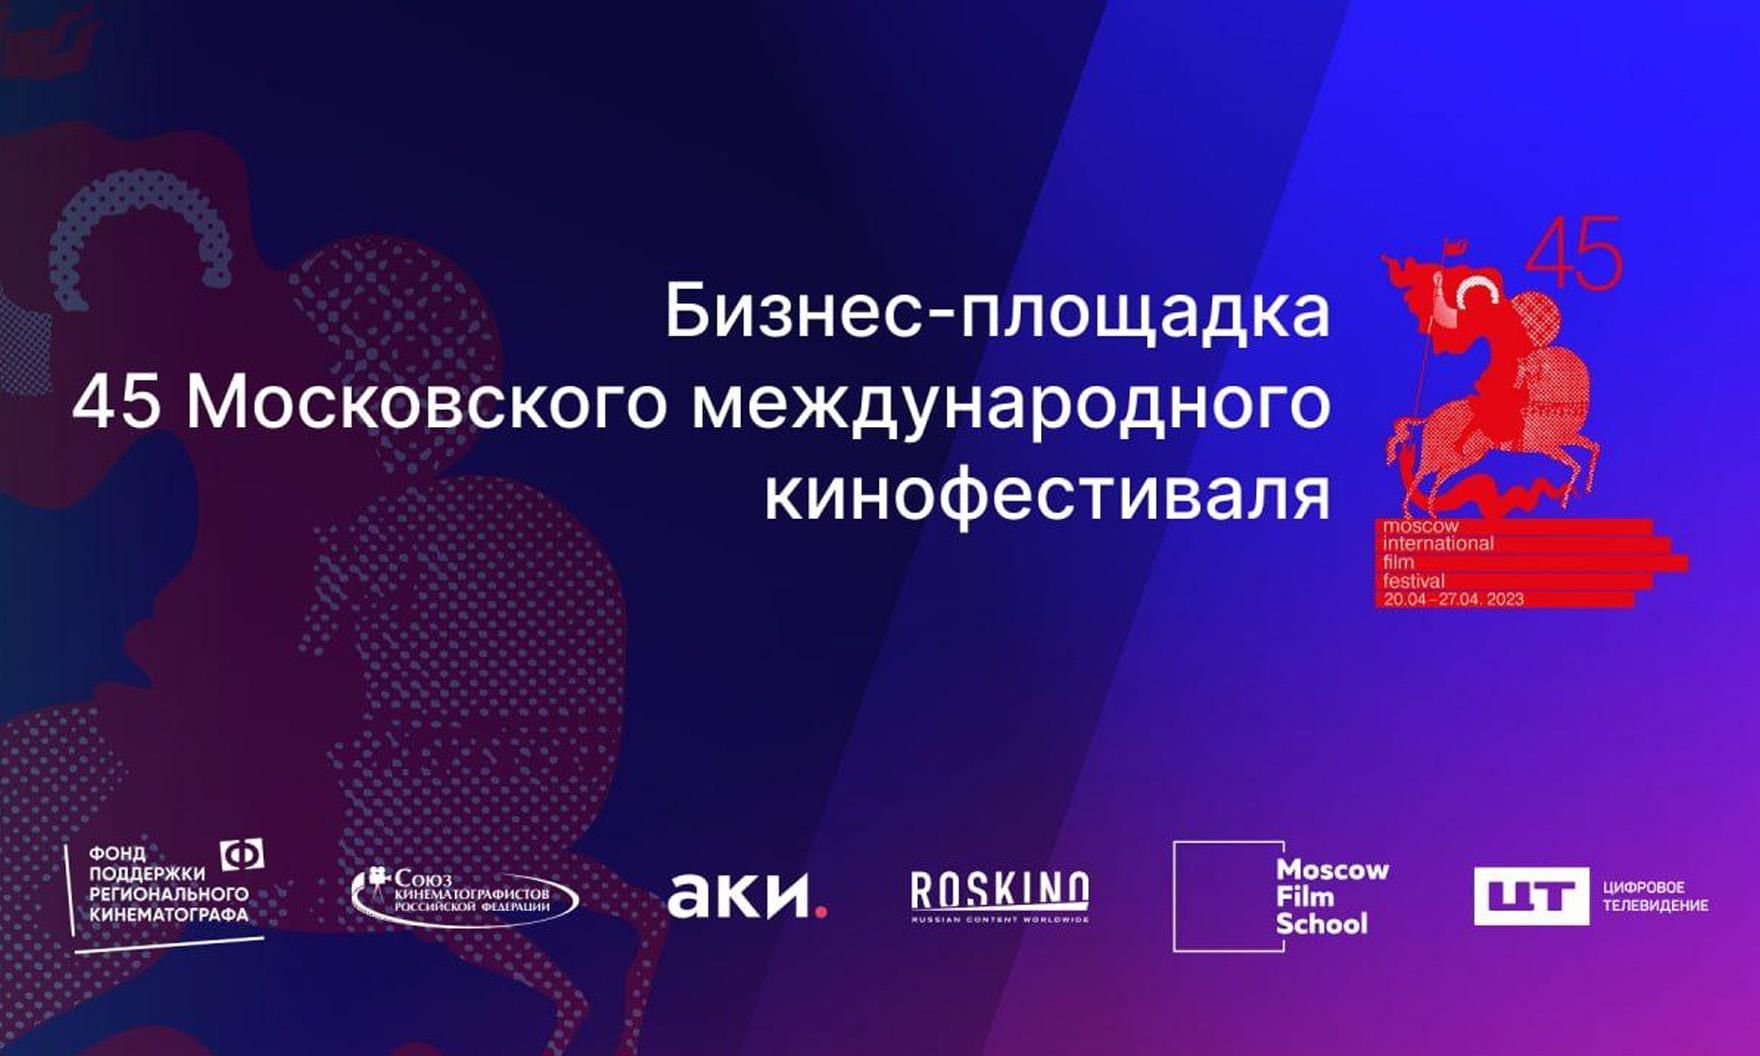 20 апреля стартует 45-й Московский международный кинофестиваль